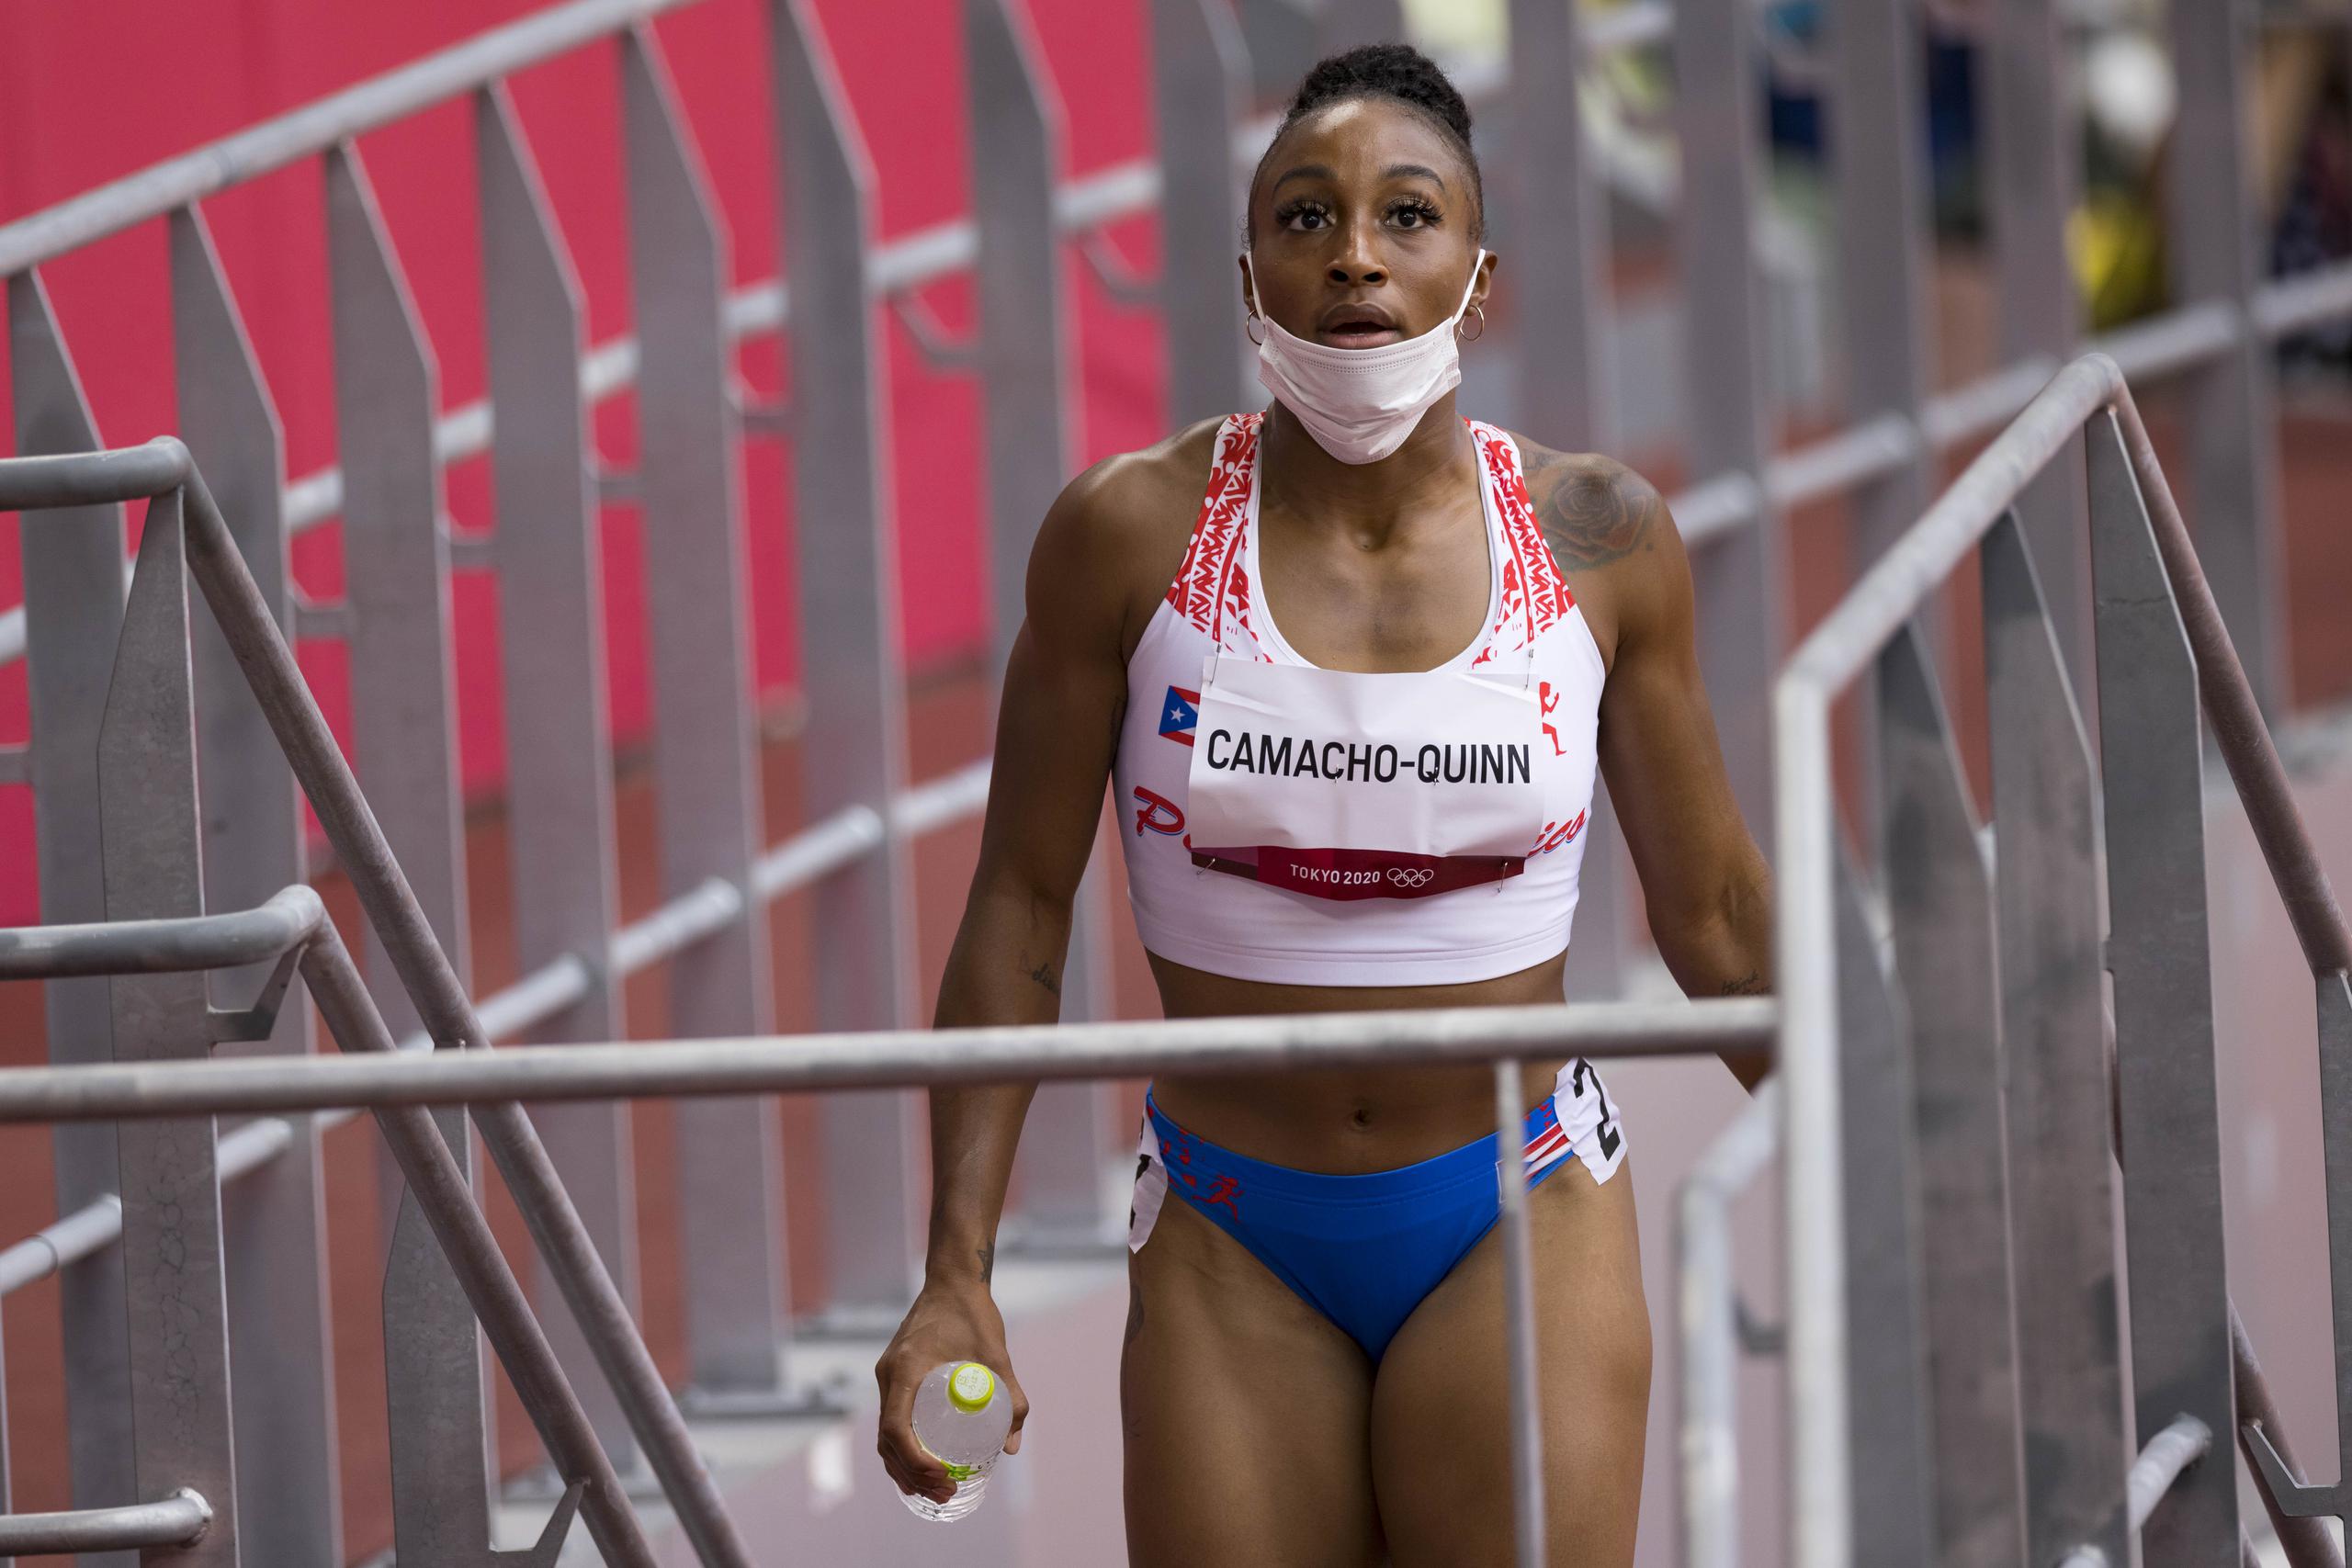 Jasmine Camacho-Quinn tuvo el mejor tiempo en la preliminar de los 100 metros con vallas entre todas las competidoras. Hizo 12.40 segundos.